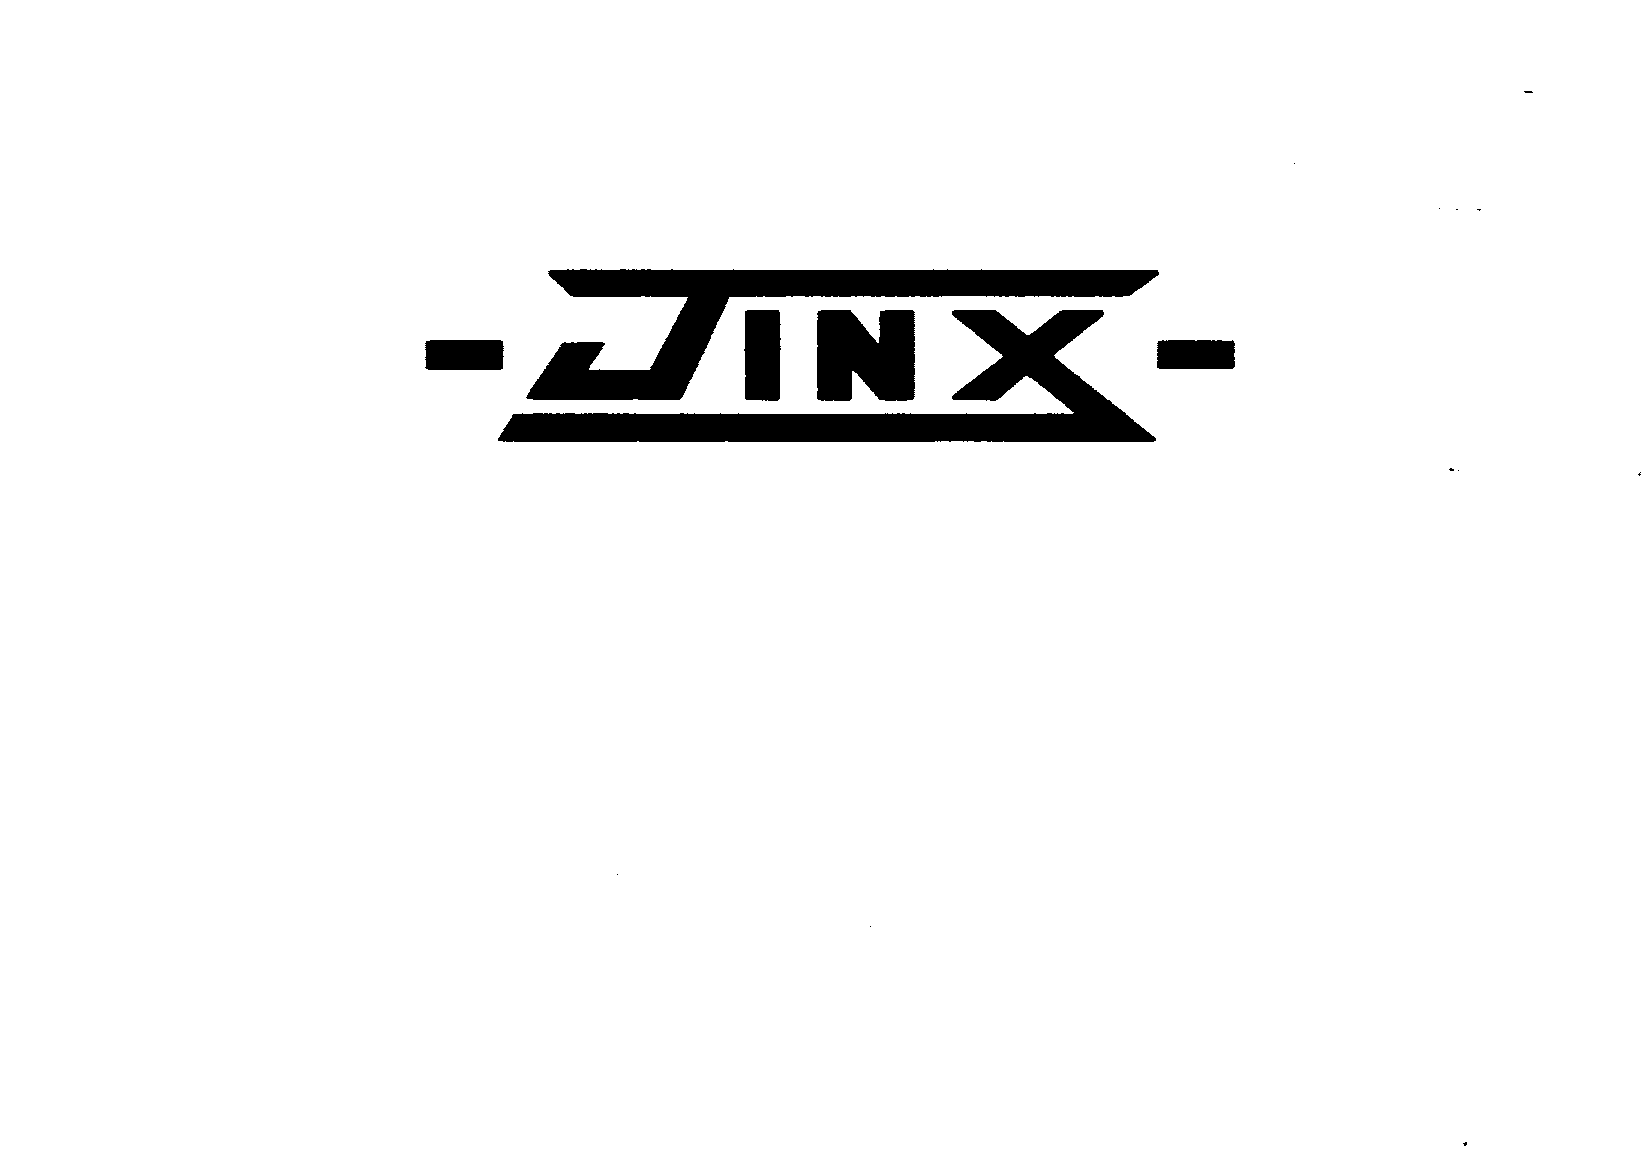 JINX